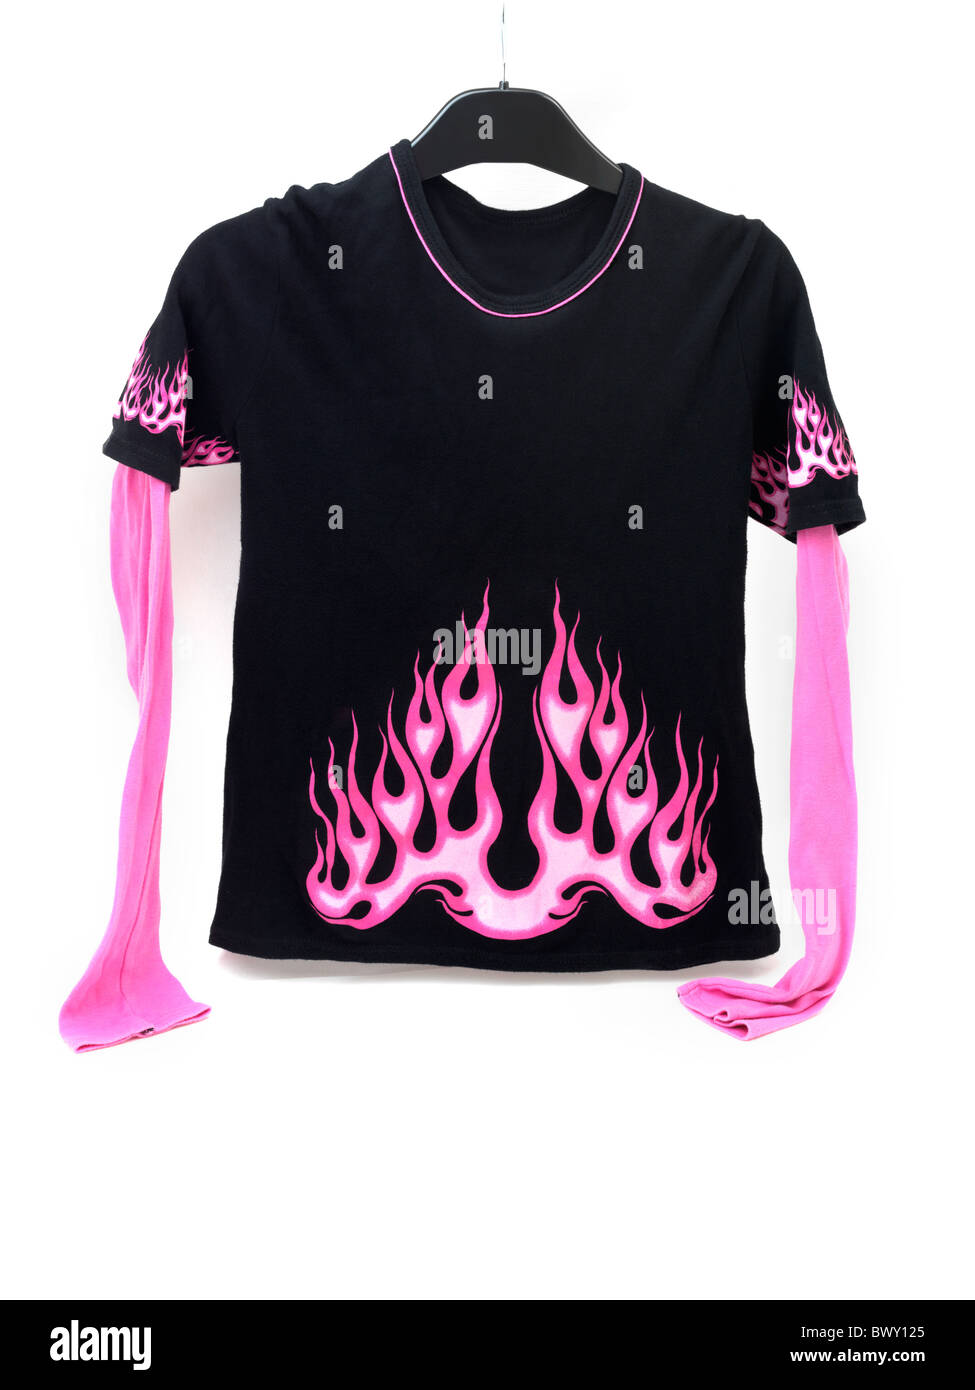 Camiseta negra con mangas Rosa y Rosa llamas Design Fotografía de stock -  Alamy